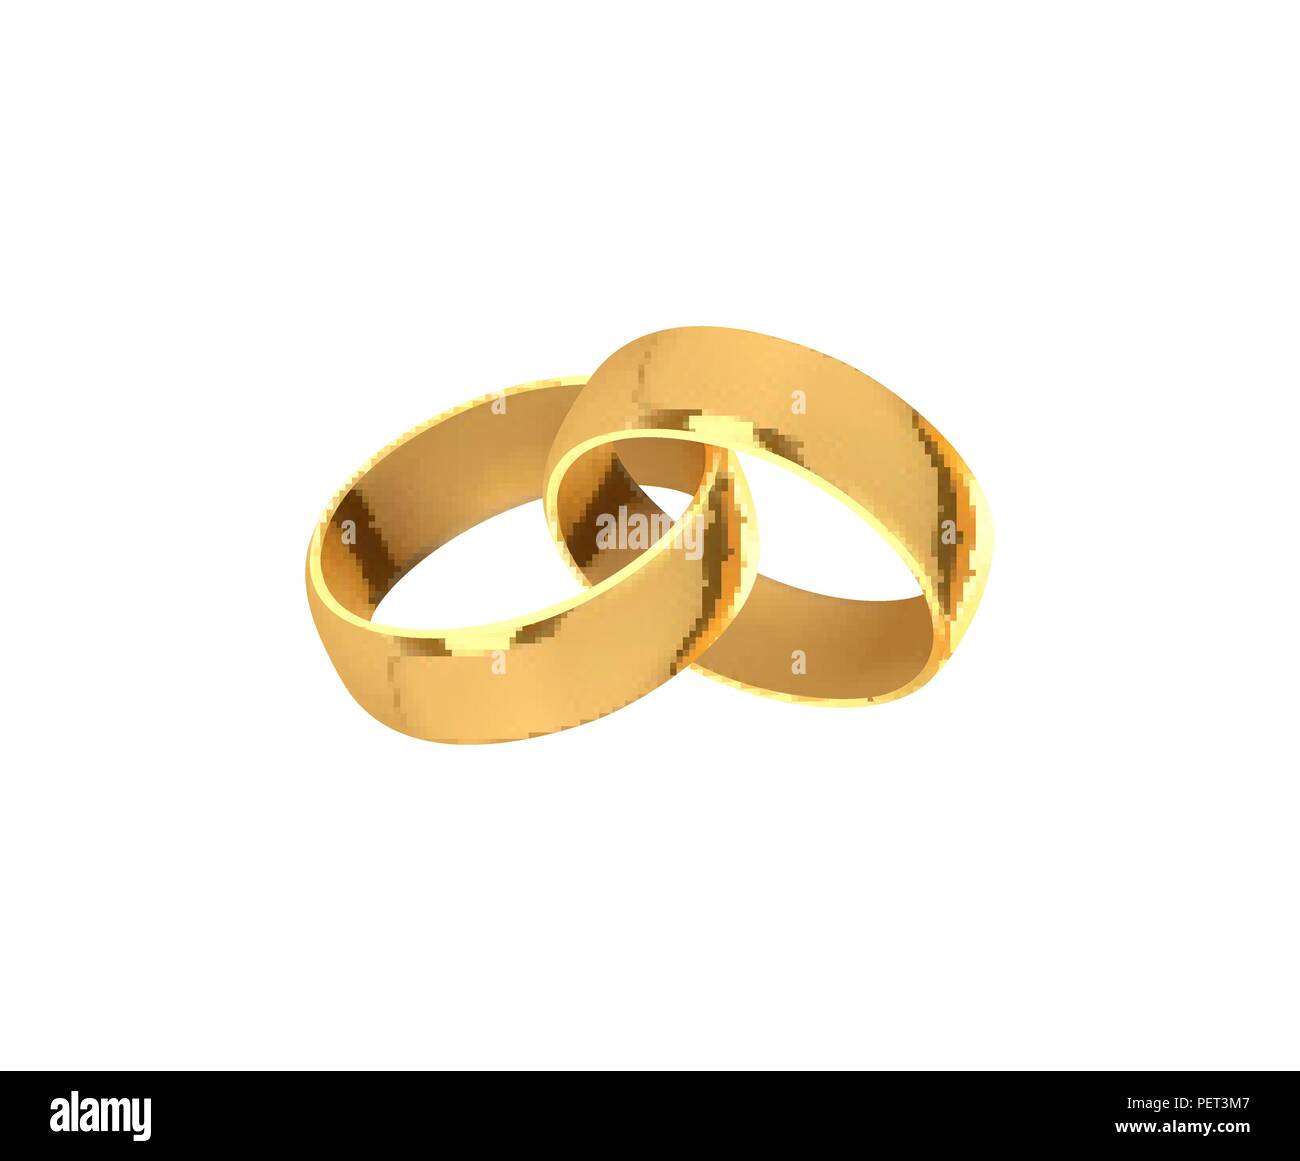 Goldene Hochzeit Ringe, realistischen Design auf weißem Hintergrund  Stock-Vektorgrafik - Alamy